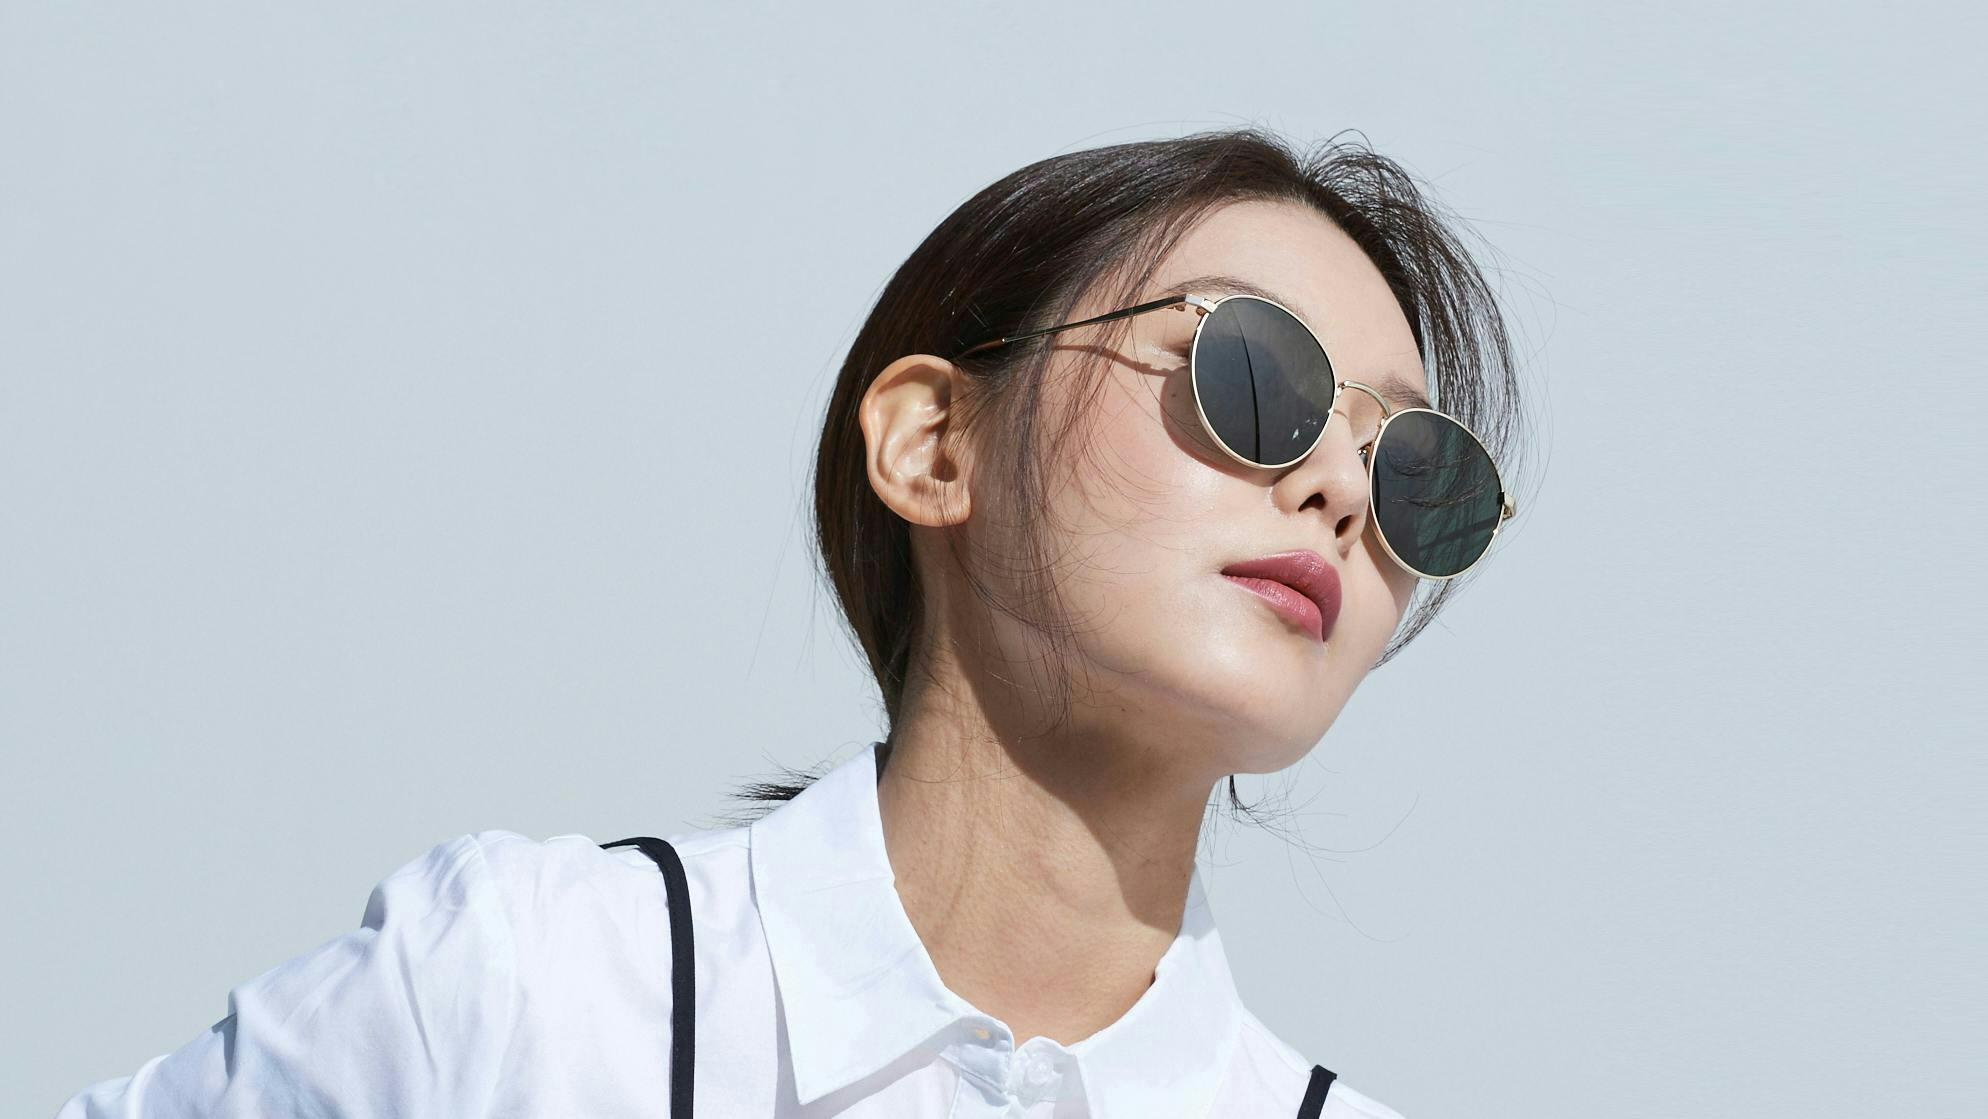 sunglasses accessories accessory person human face glasses